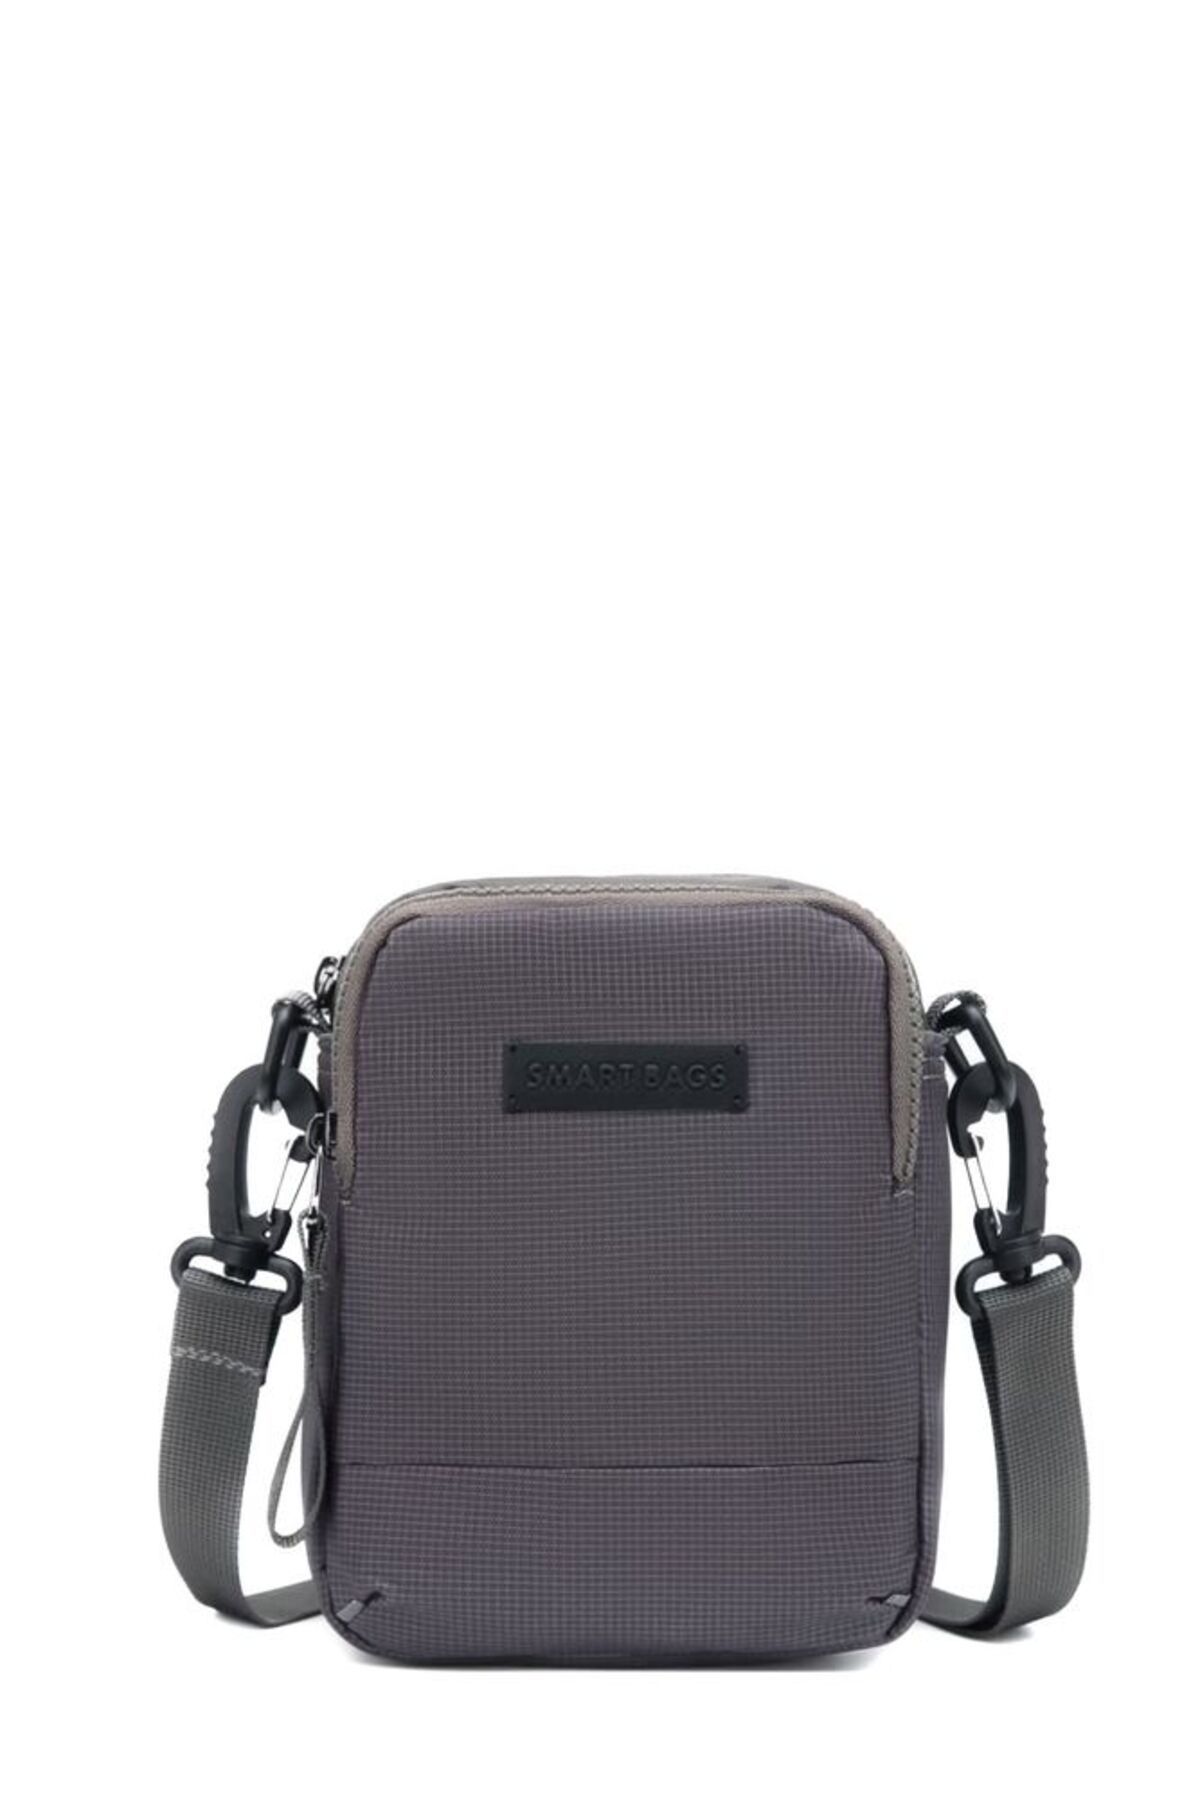 Smart Bags Mini Boy Ultra Hafif Seri Uniseks Postacı Omuz Çantası 8640